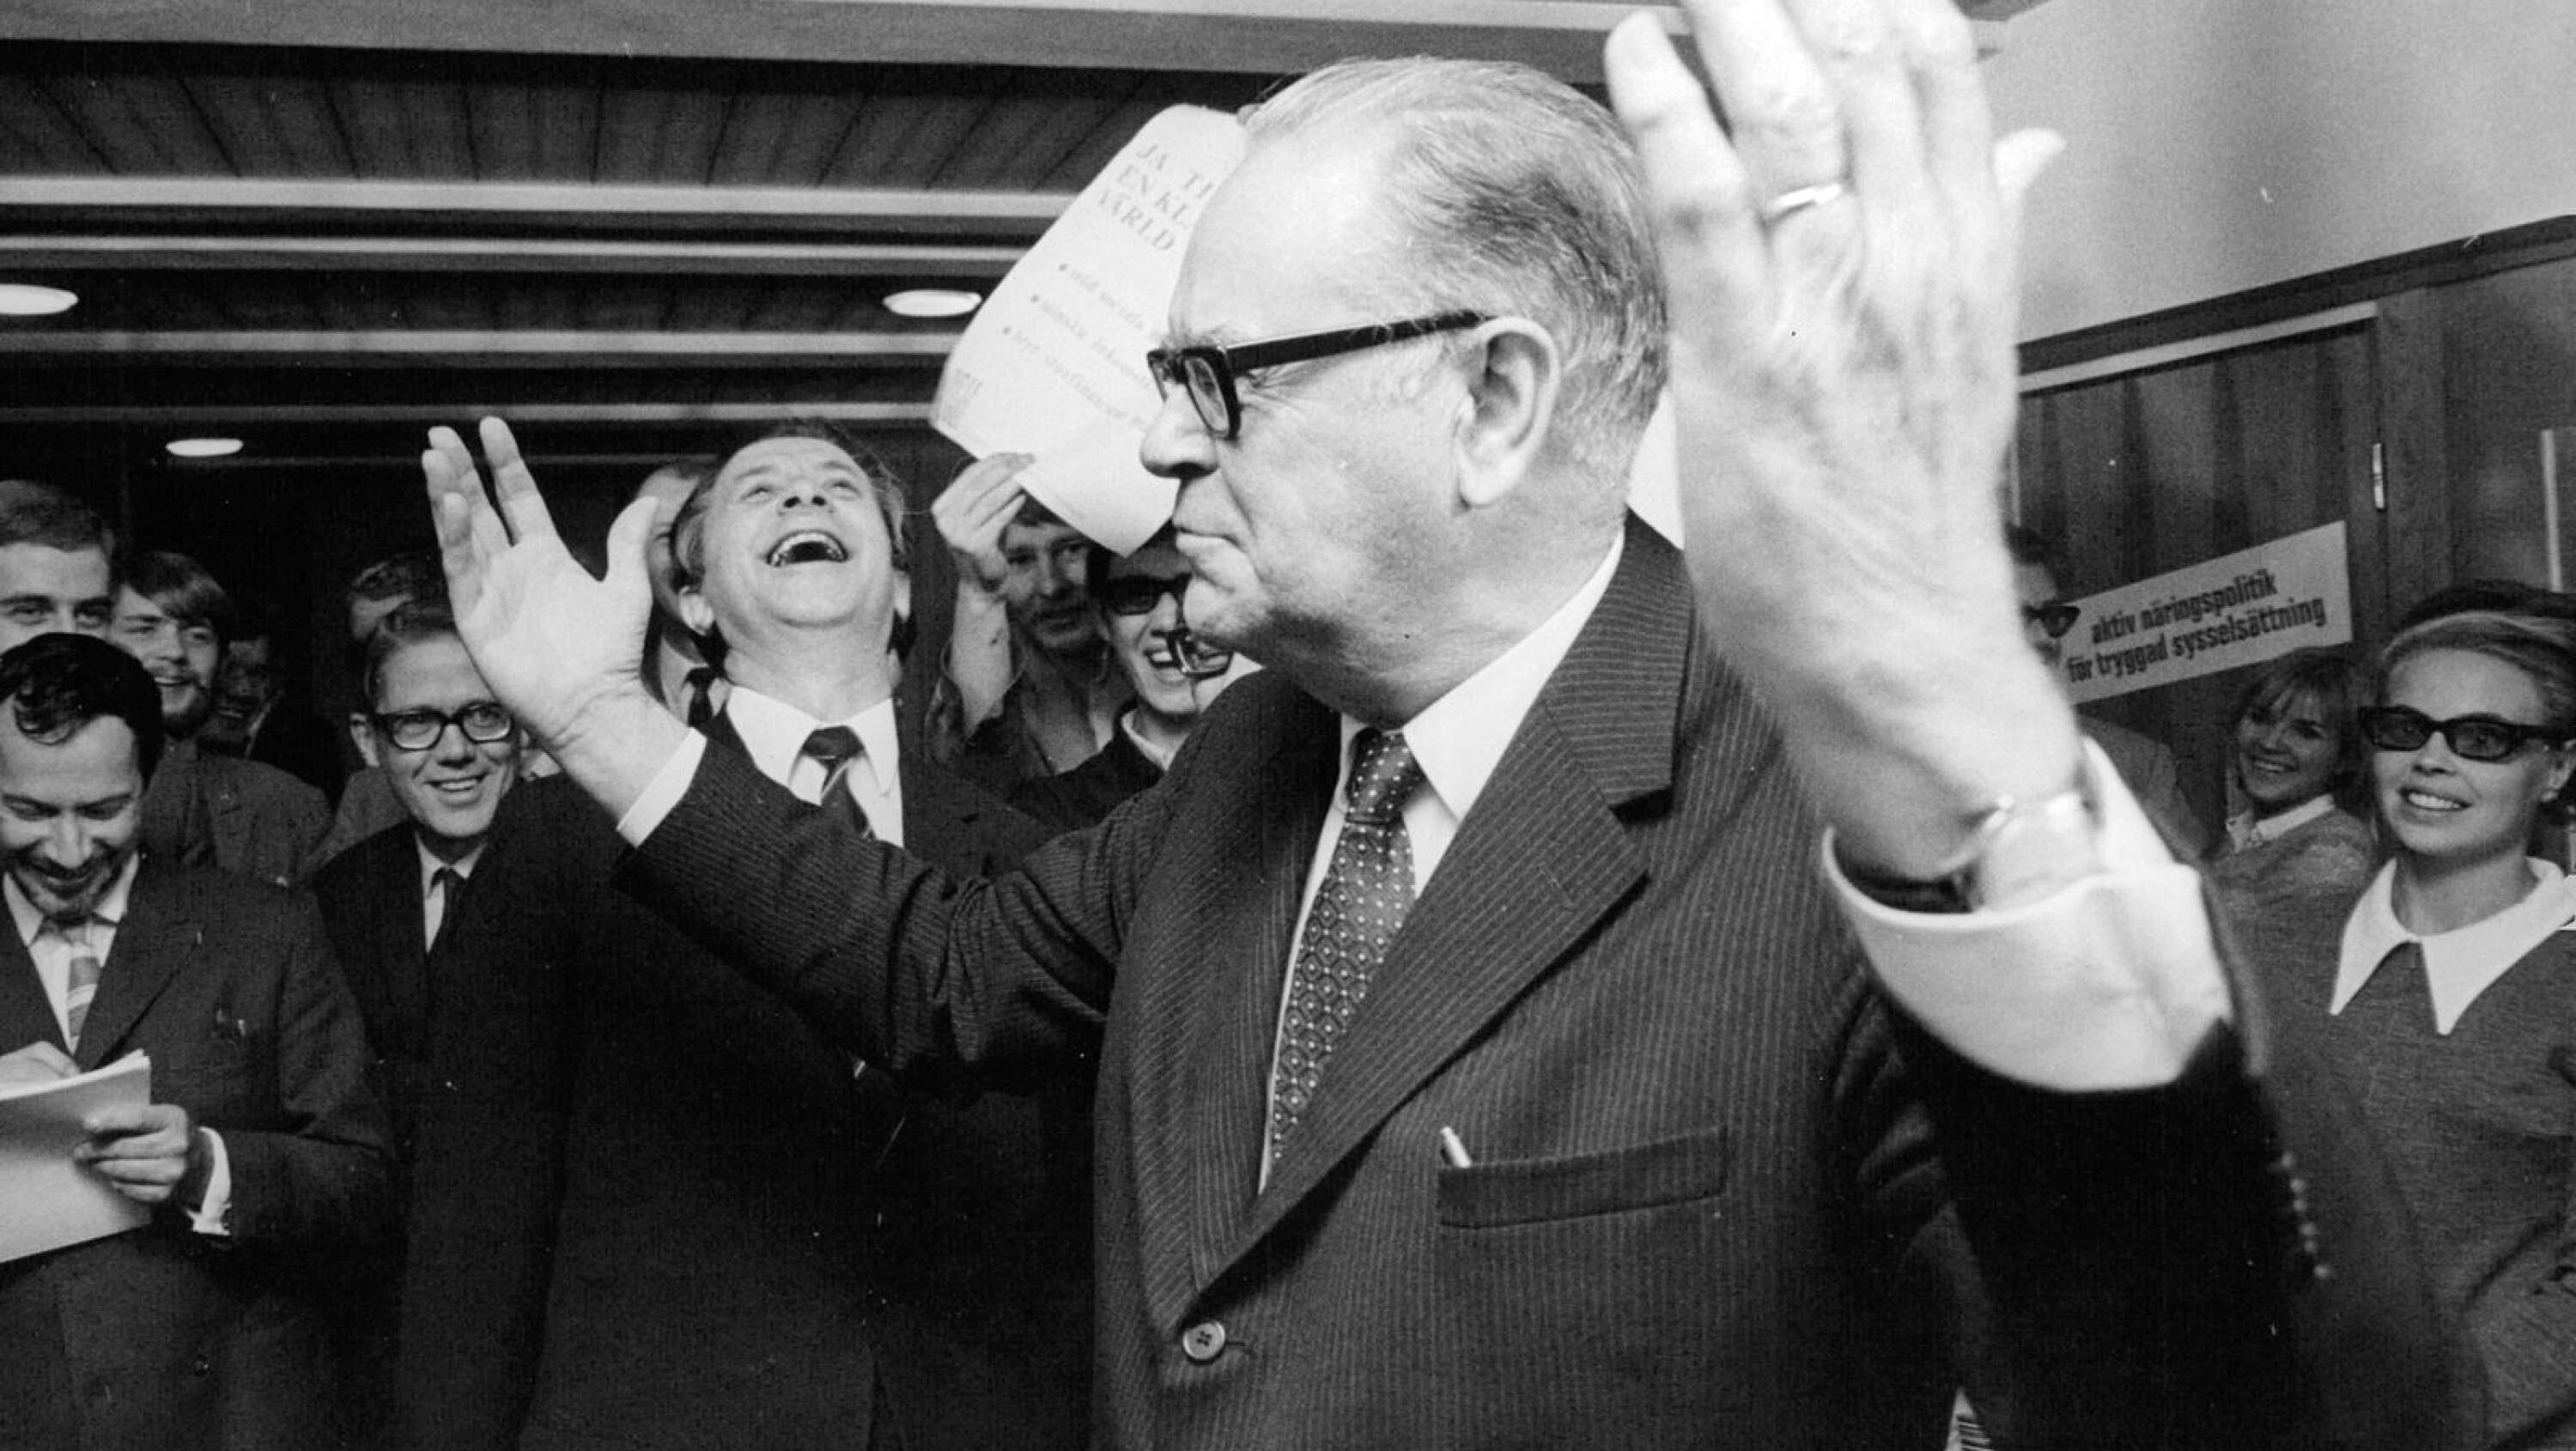 Valets segerherre 1968, statsminister Tage Erlander (S), konstaterar framgången i sitt partihögkvarter under valet. Partisekreterare Sten Andersson skrattar i bakgrunden.